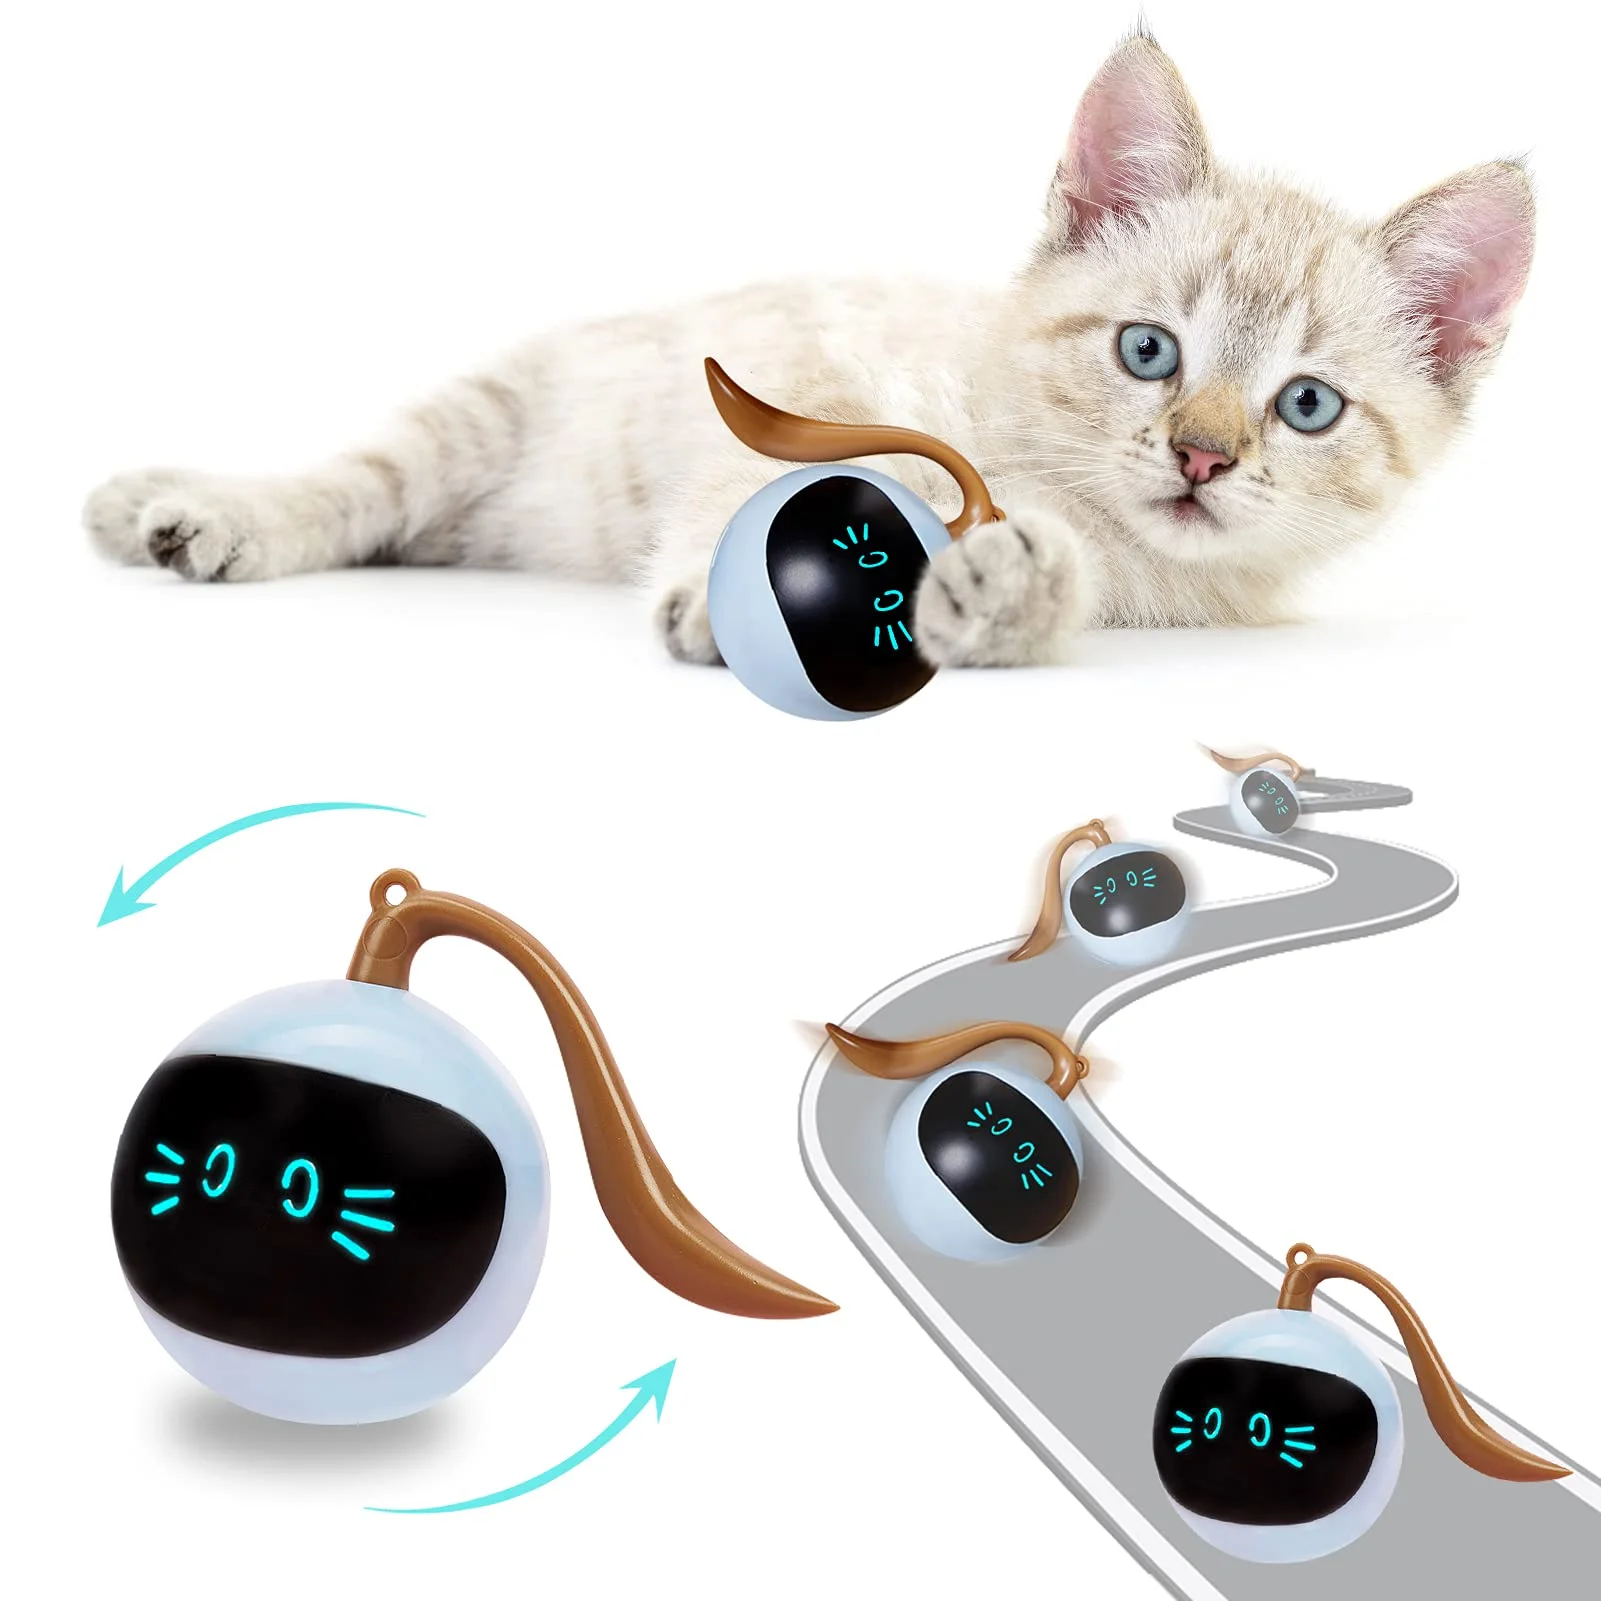 

Автоматические игрушки в виде кошачьих мячей, Интерактивная электрическая перезаряжаемая от USB самовращающаяся игрушка для дома, для самос...